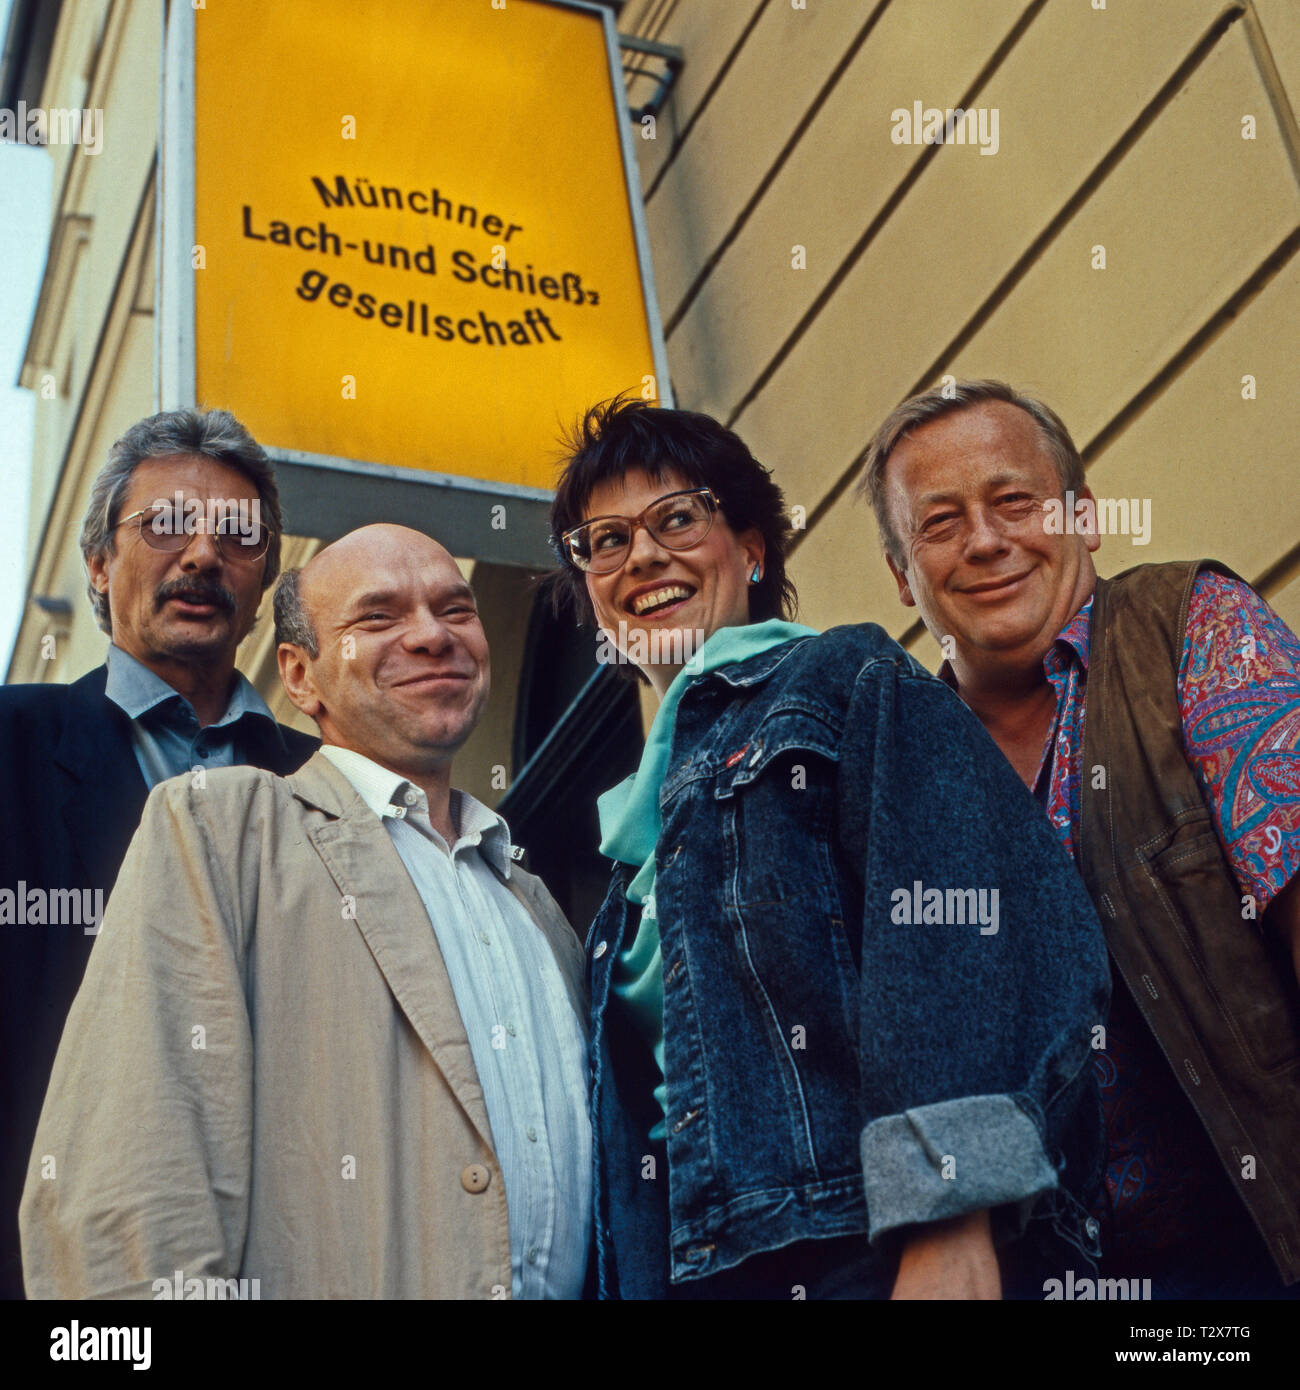 Münchner Lach- und Schießgesellschaft 1990, Ensemble: Henning Venske, Hans Jürgen Silberbaum, Gabi Lodemeier, Rainer Basedow Foto Stock